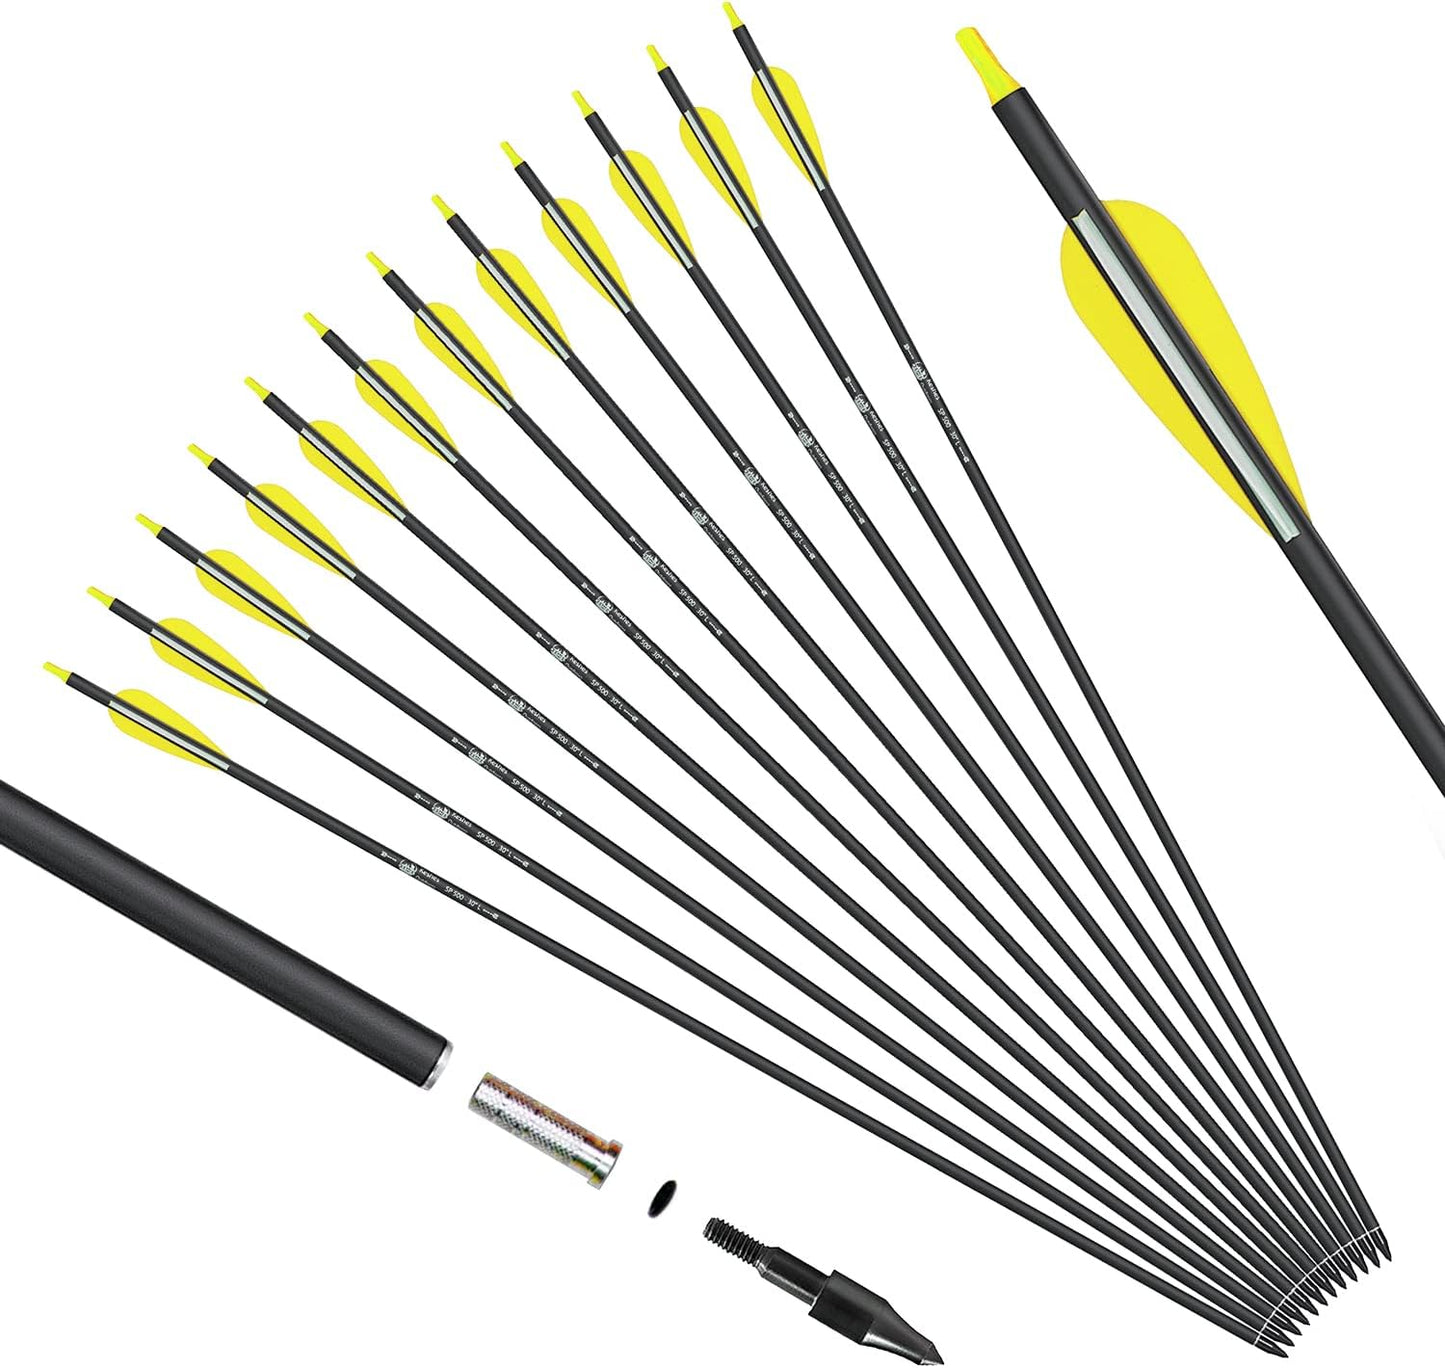 30" Carbon Arrows set 12 Pack